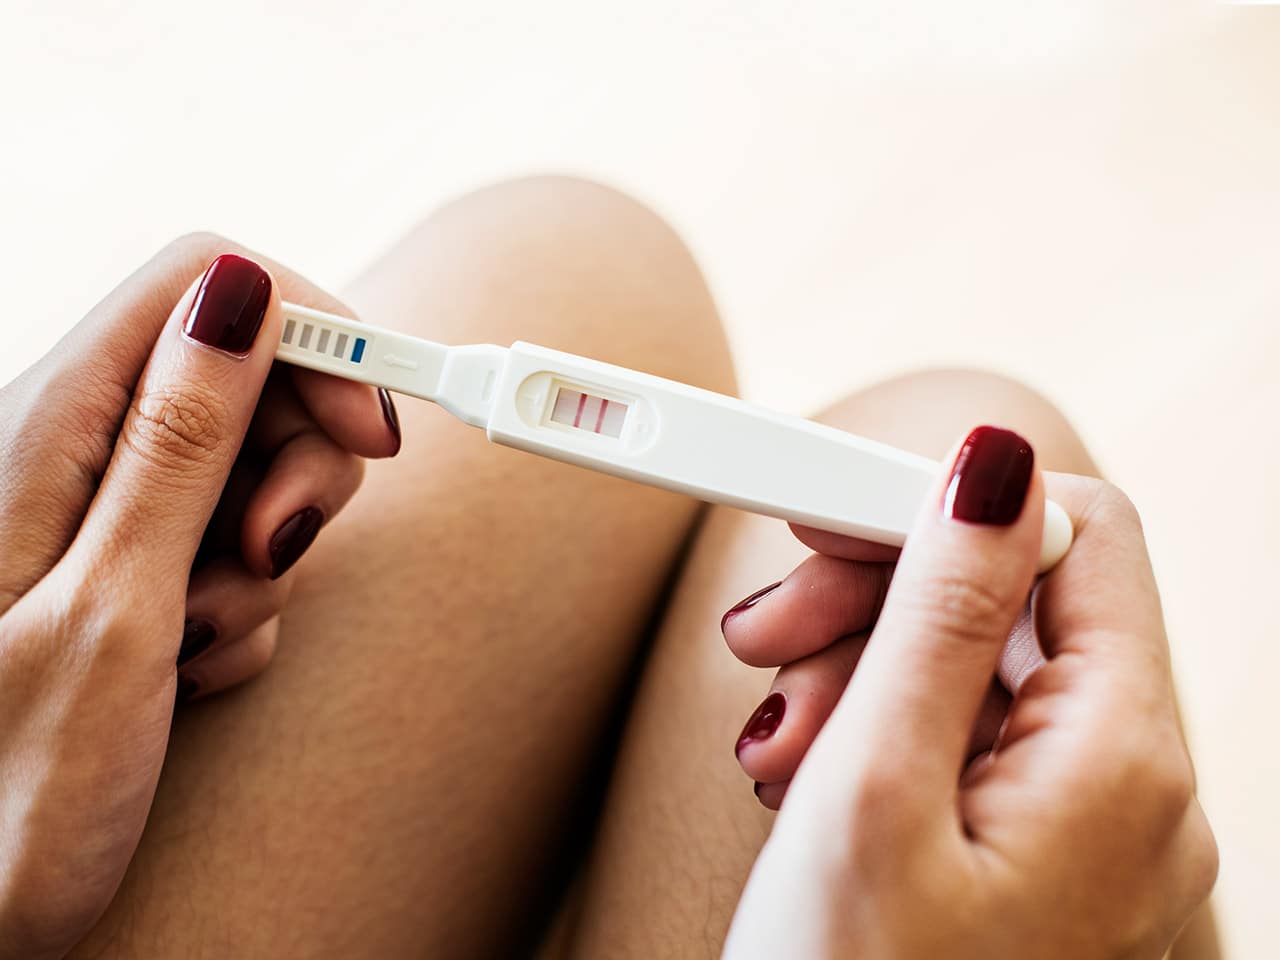 positiver Schwangerschaftstest trotz Periode